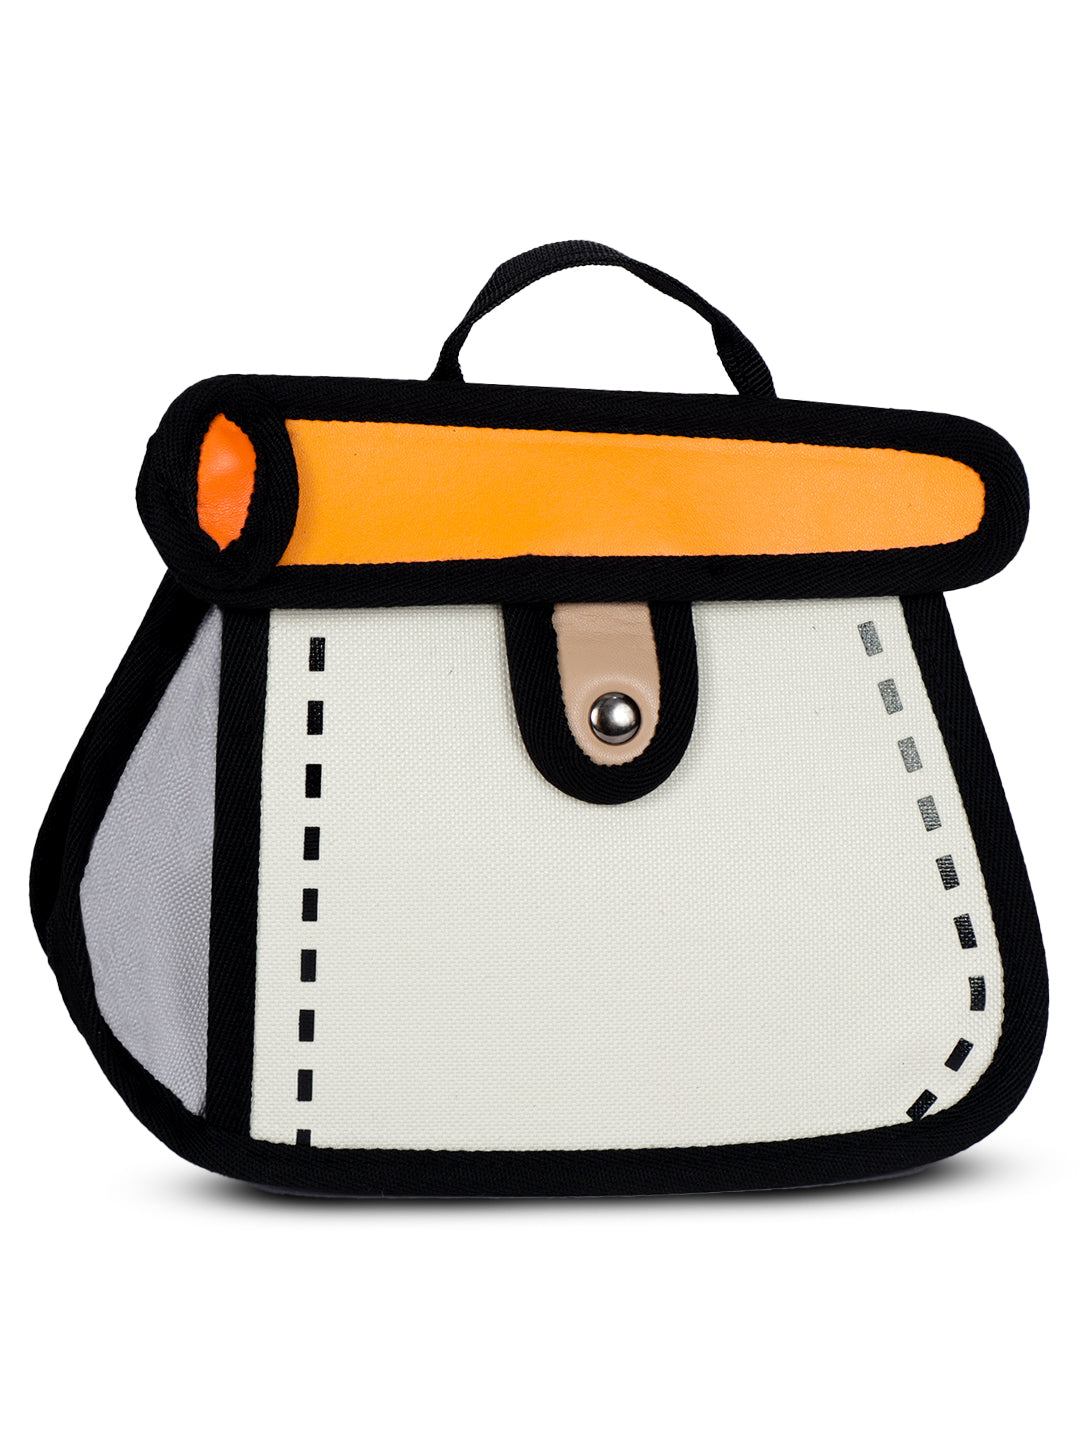 2D pouch bag women handbag#color_beige-orange